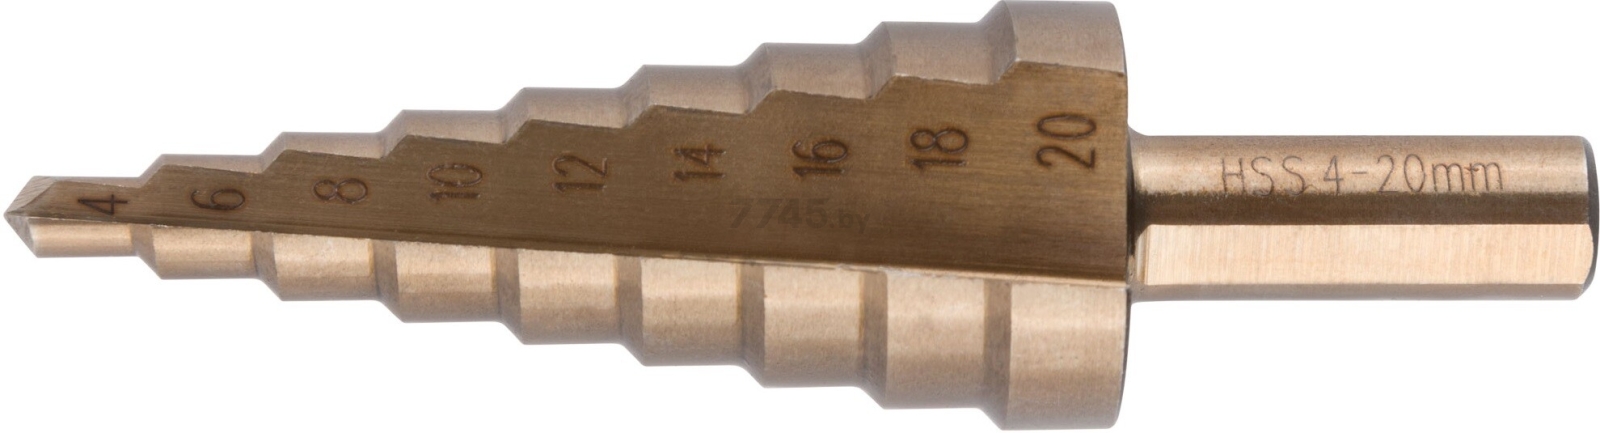 Сверло ступенчатое по металлу 4-20 мм FIT (36392)